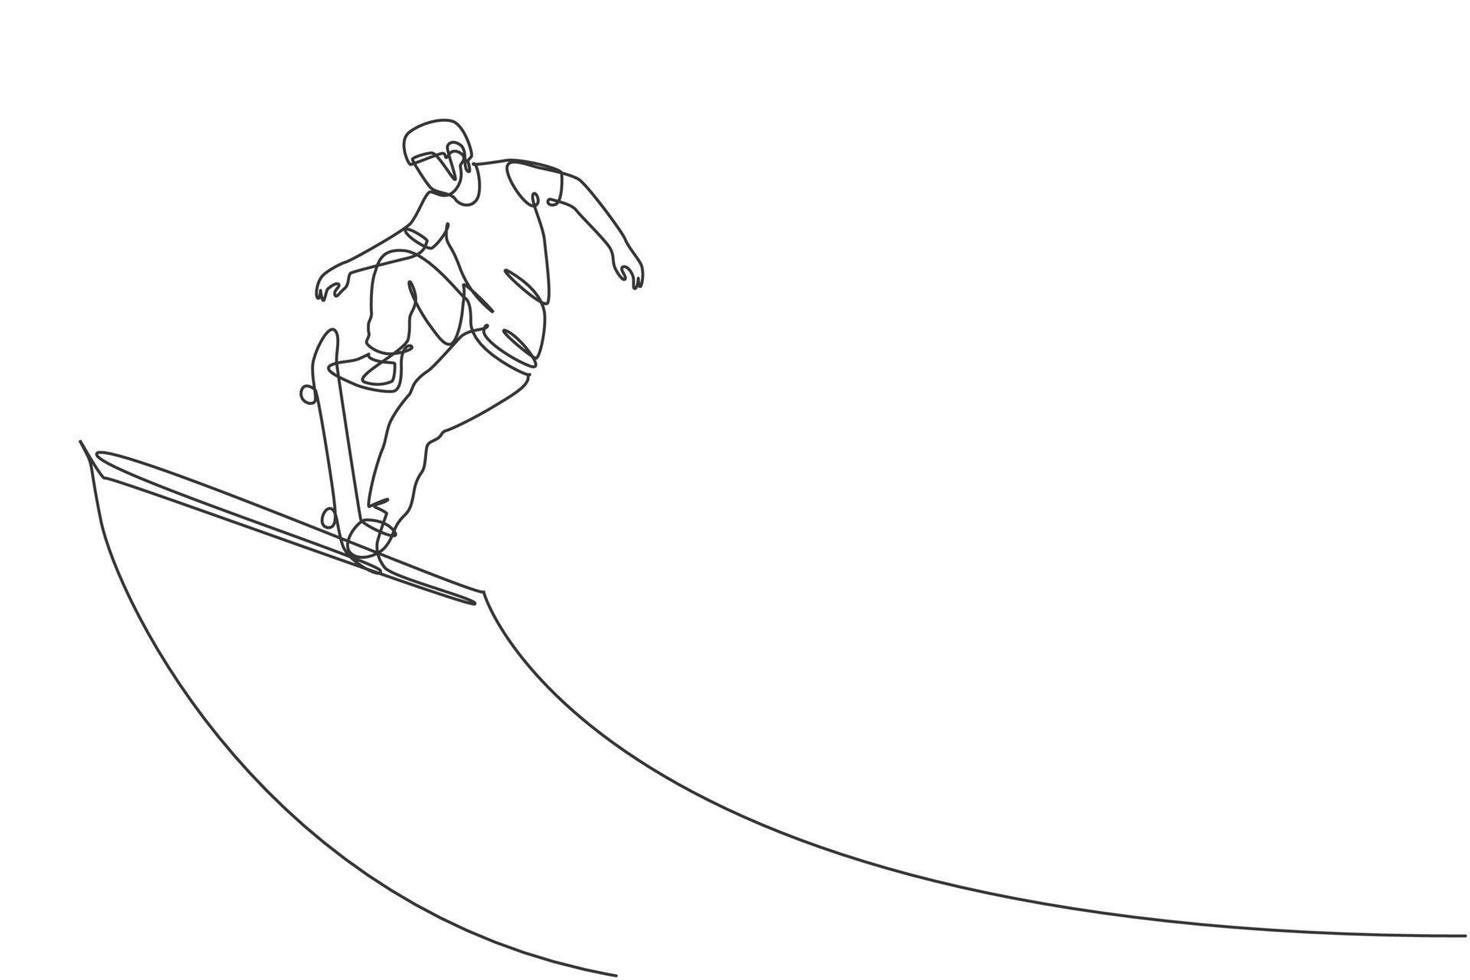 en enda linjeteckning av ung skateboardåkare man tränar skateboard på rampbrädet vektorillustration. tonåring livsstil och extrem utomhus sport koncept. modern kontinuerlig linjeritningsdesign vektor